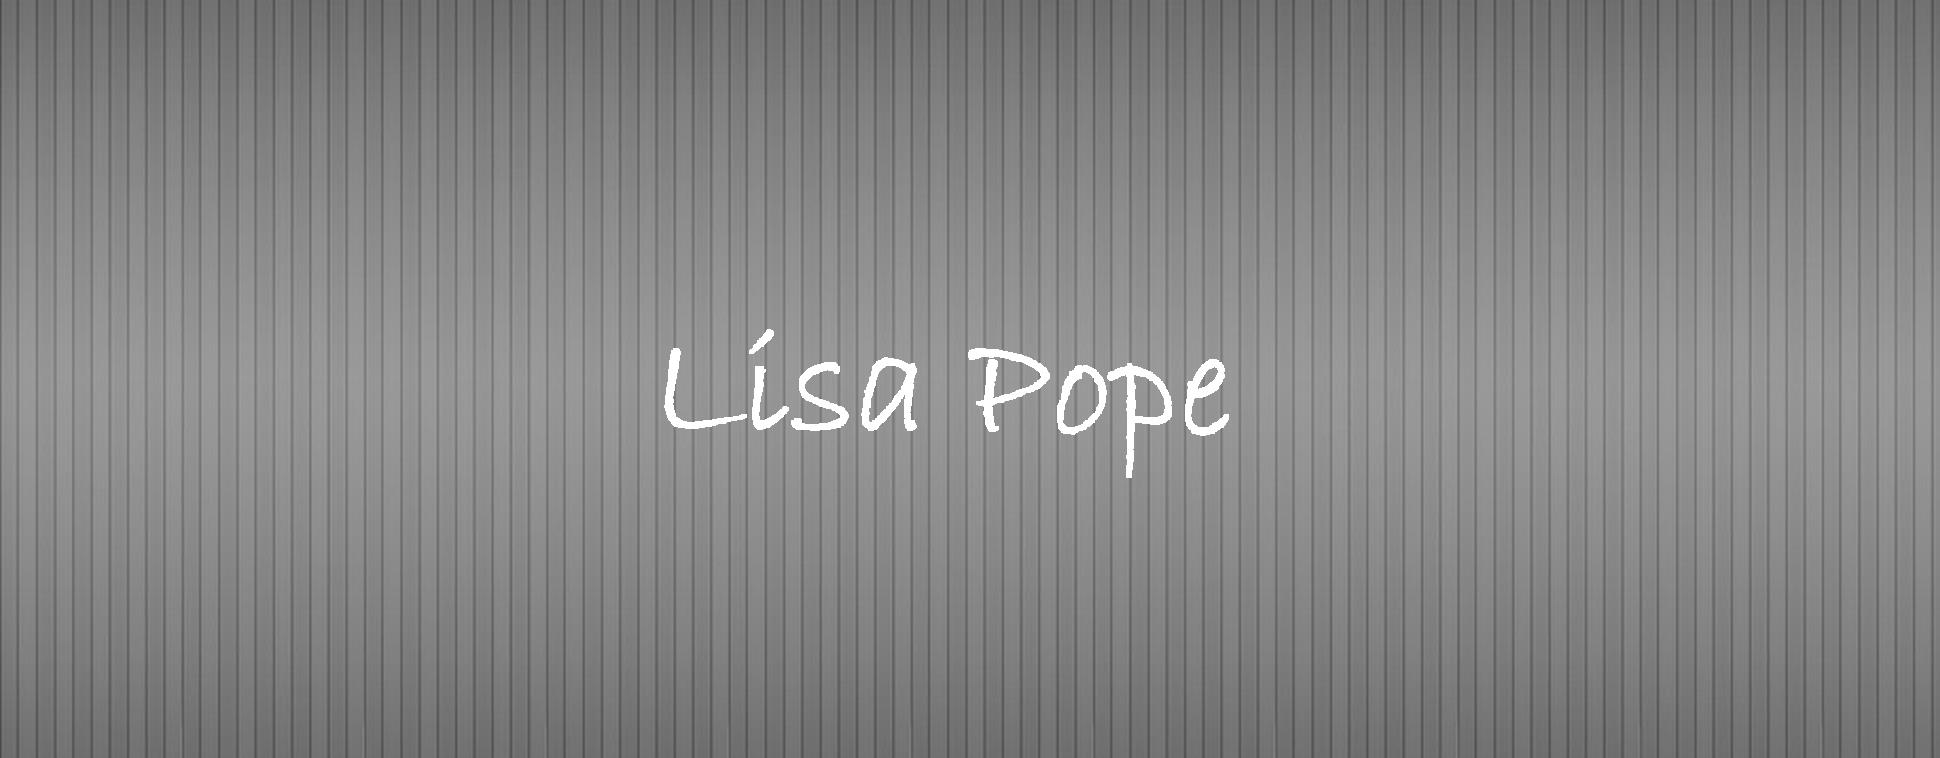 Lisa Pope.jpg